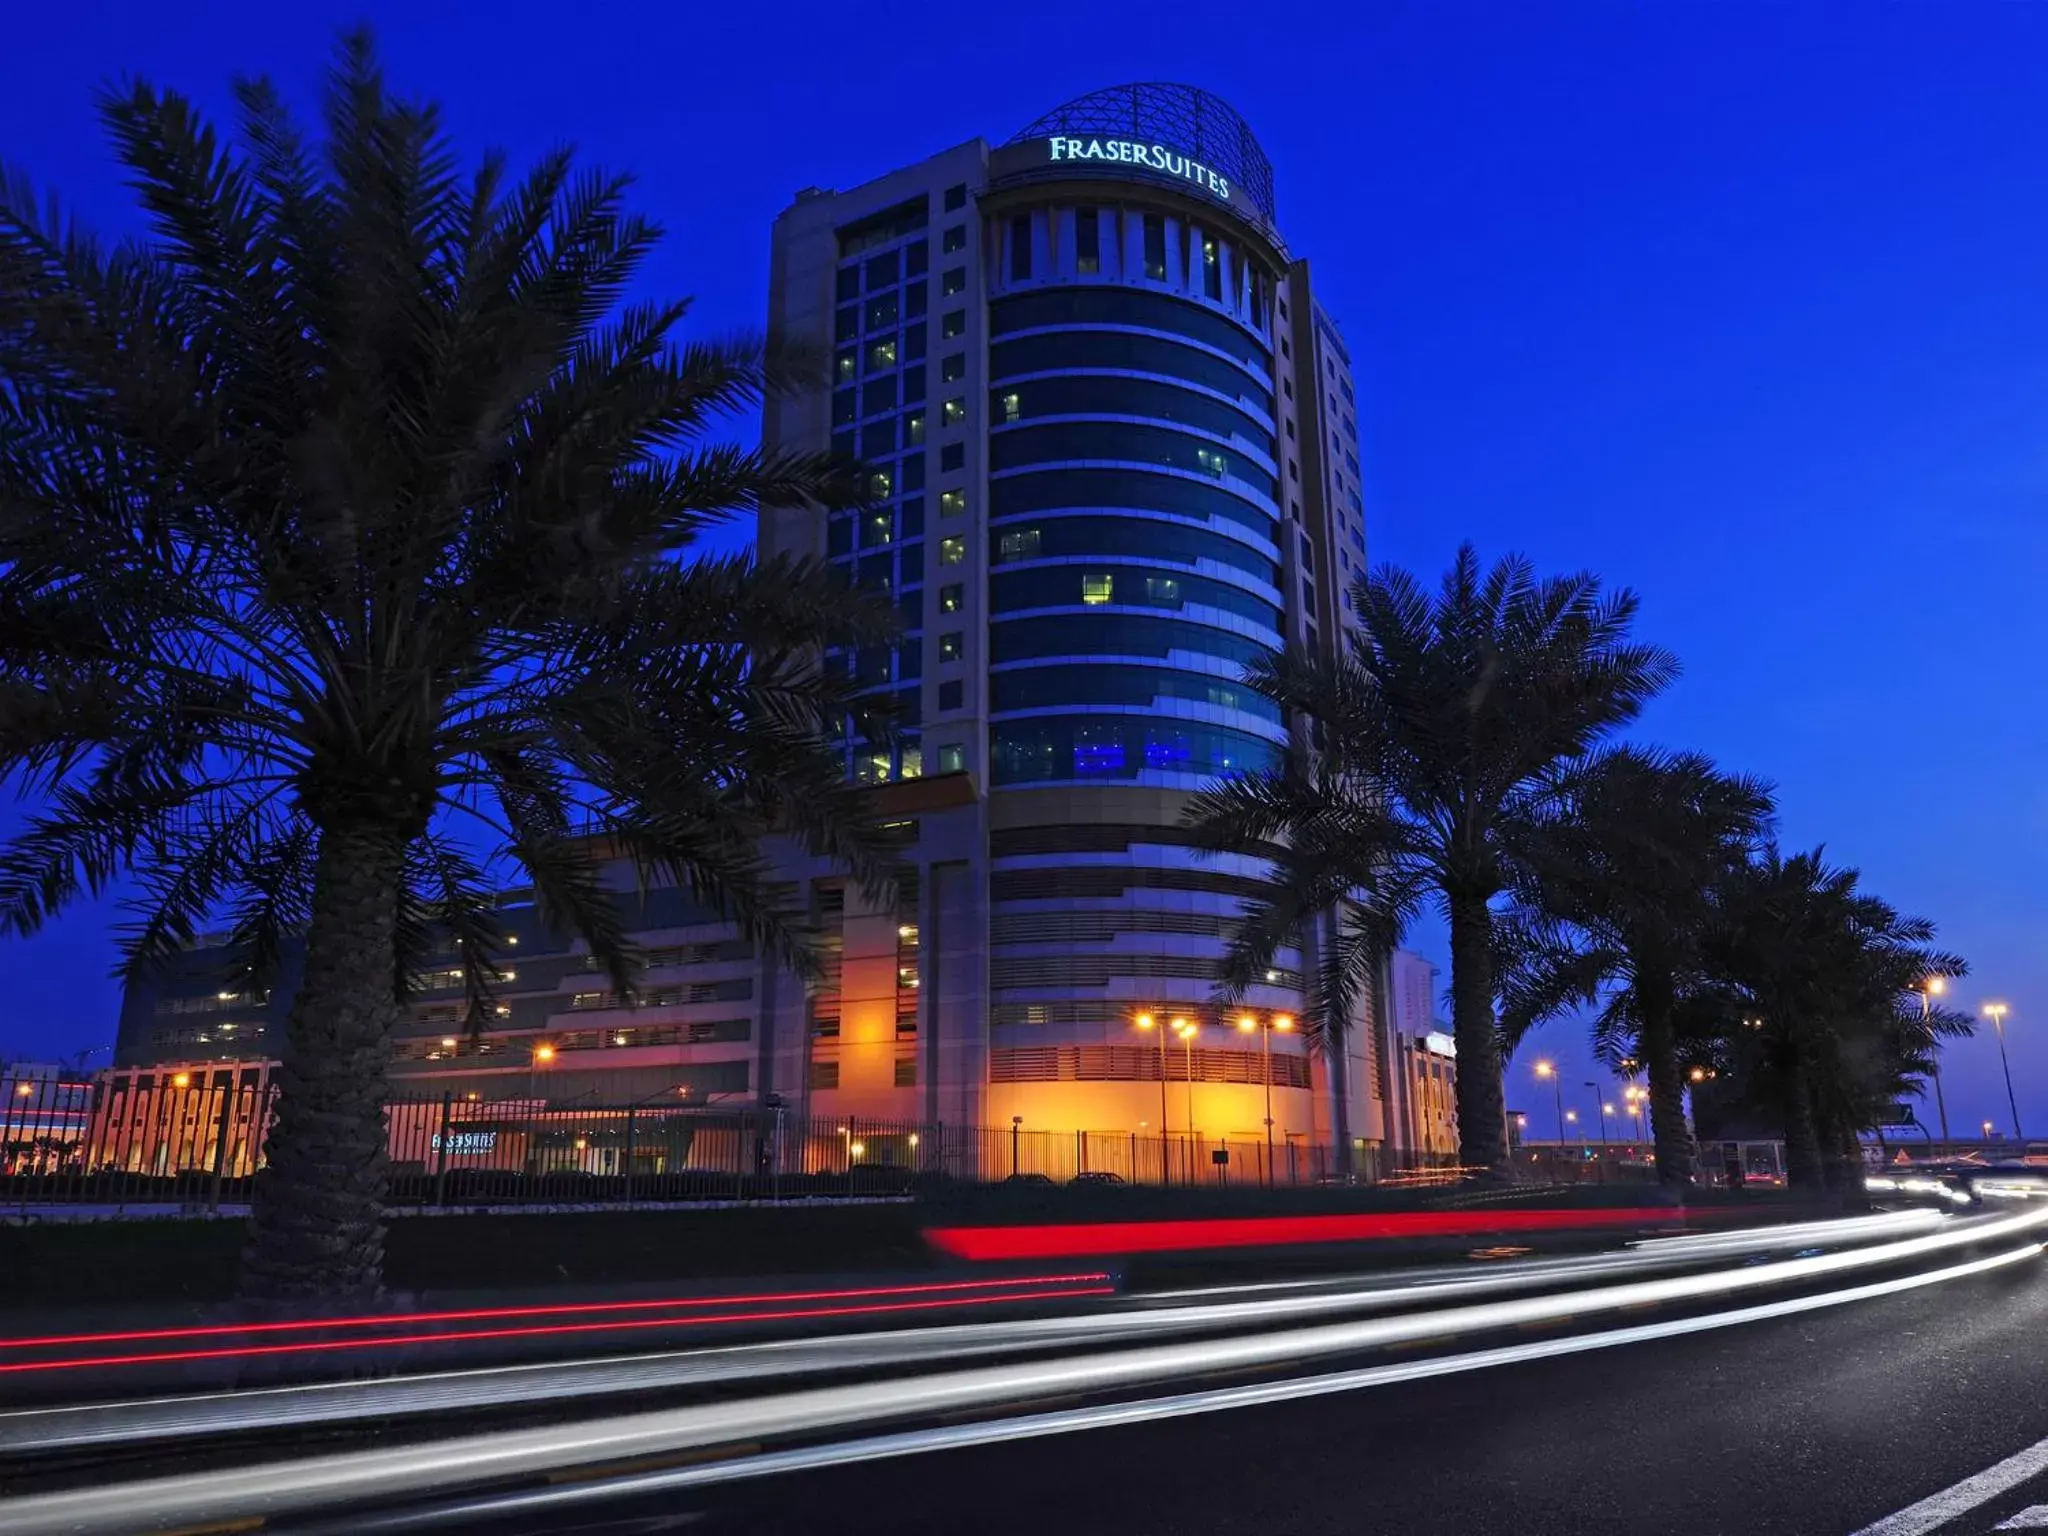 Property Building in Fraser Suites Seef Bahrain